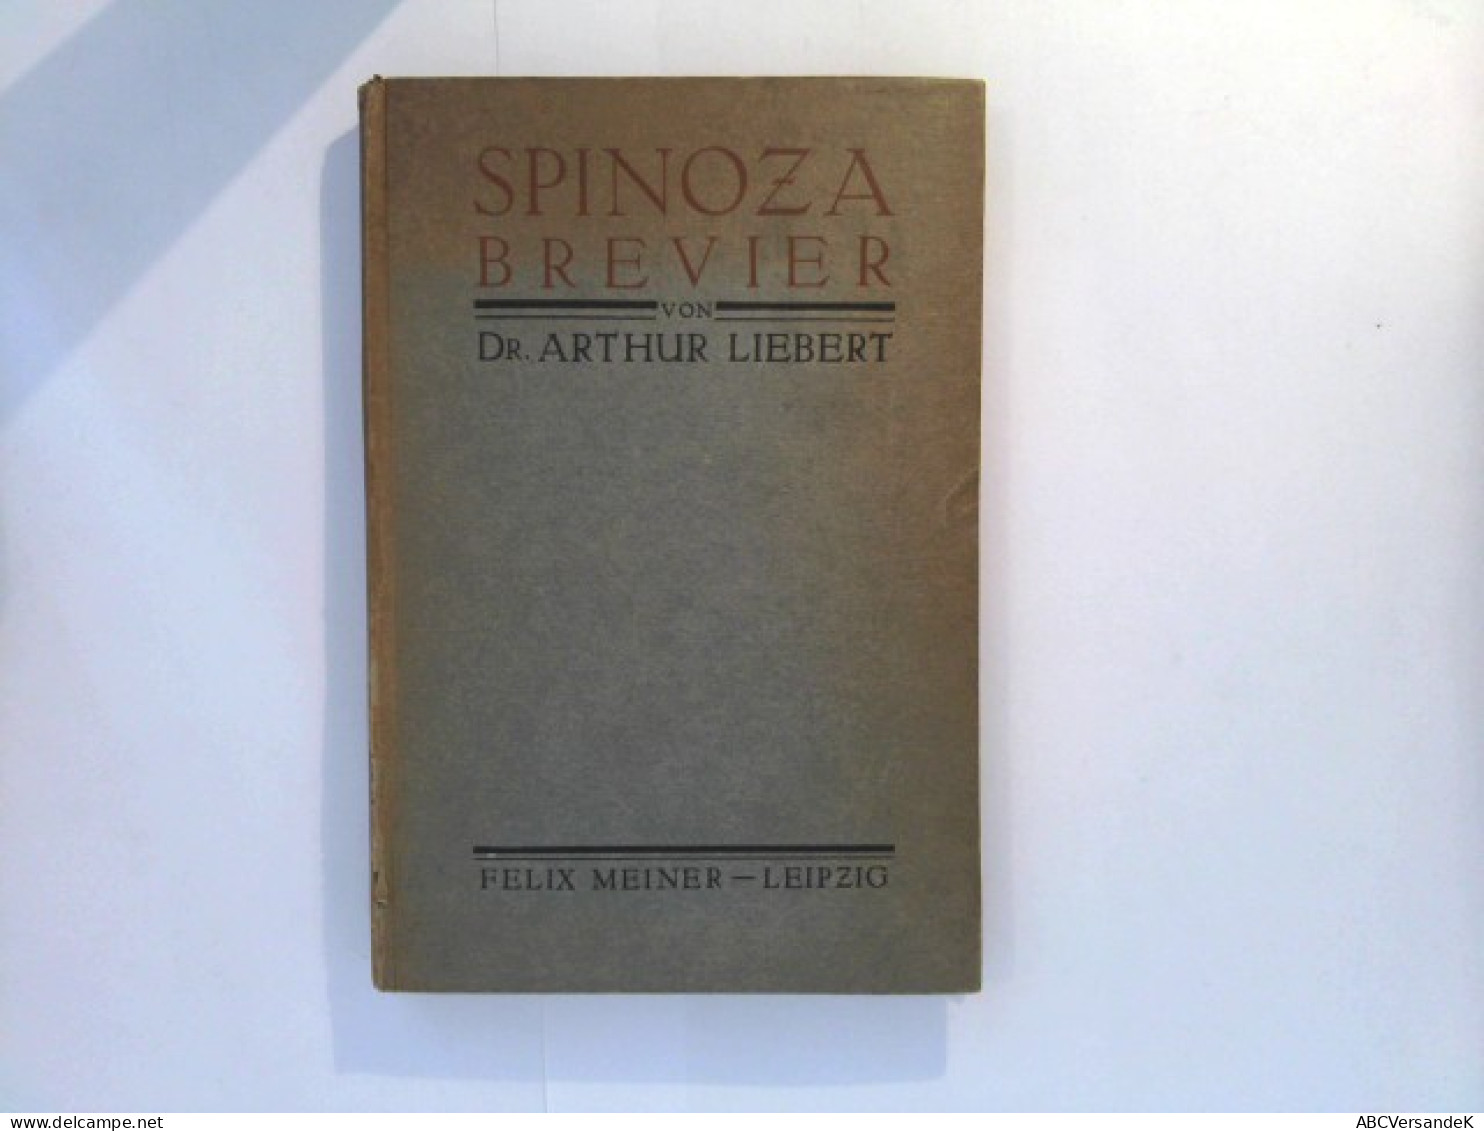 Spinoza - Brevier - Filosofía